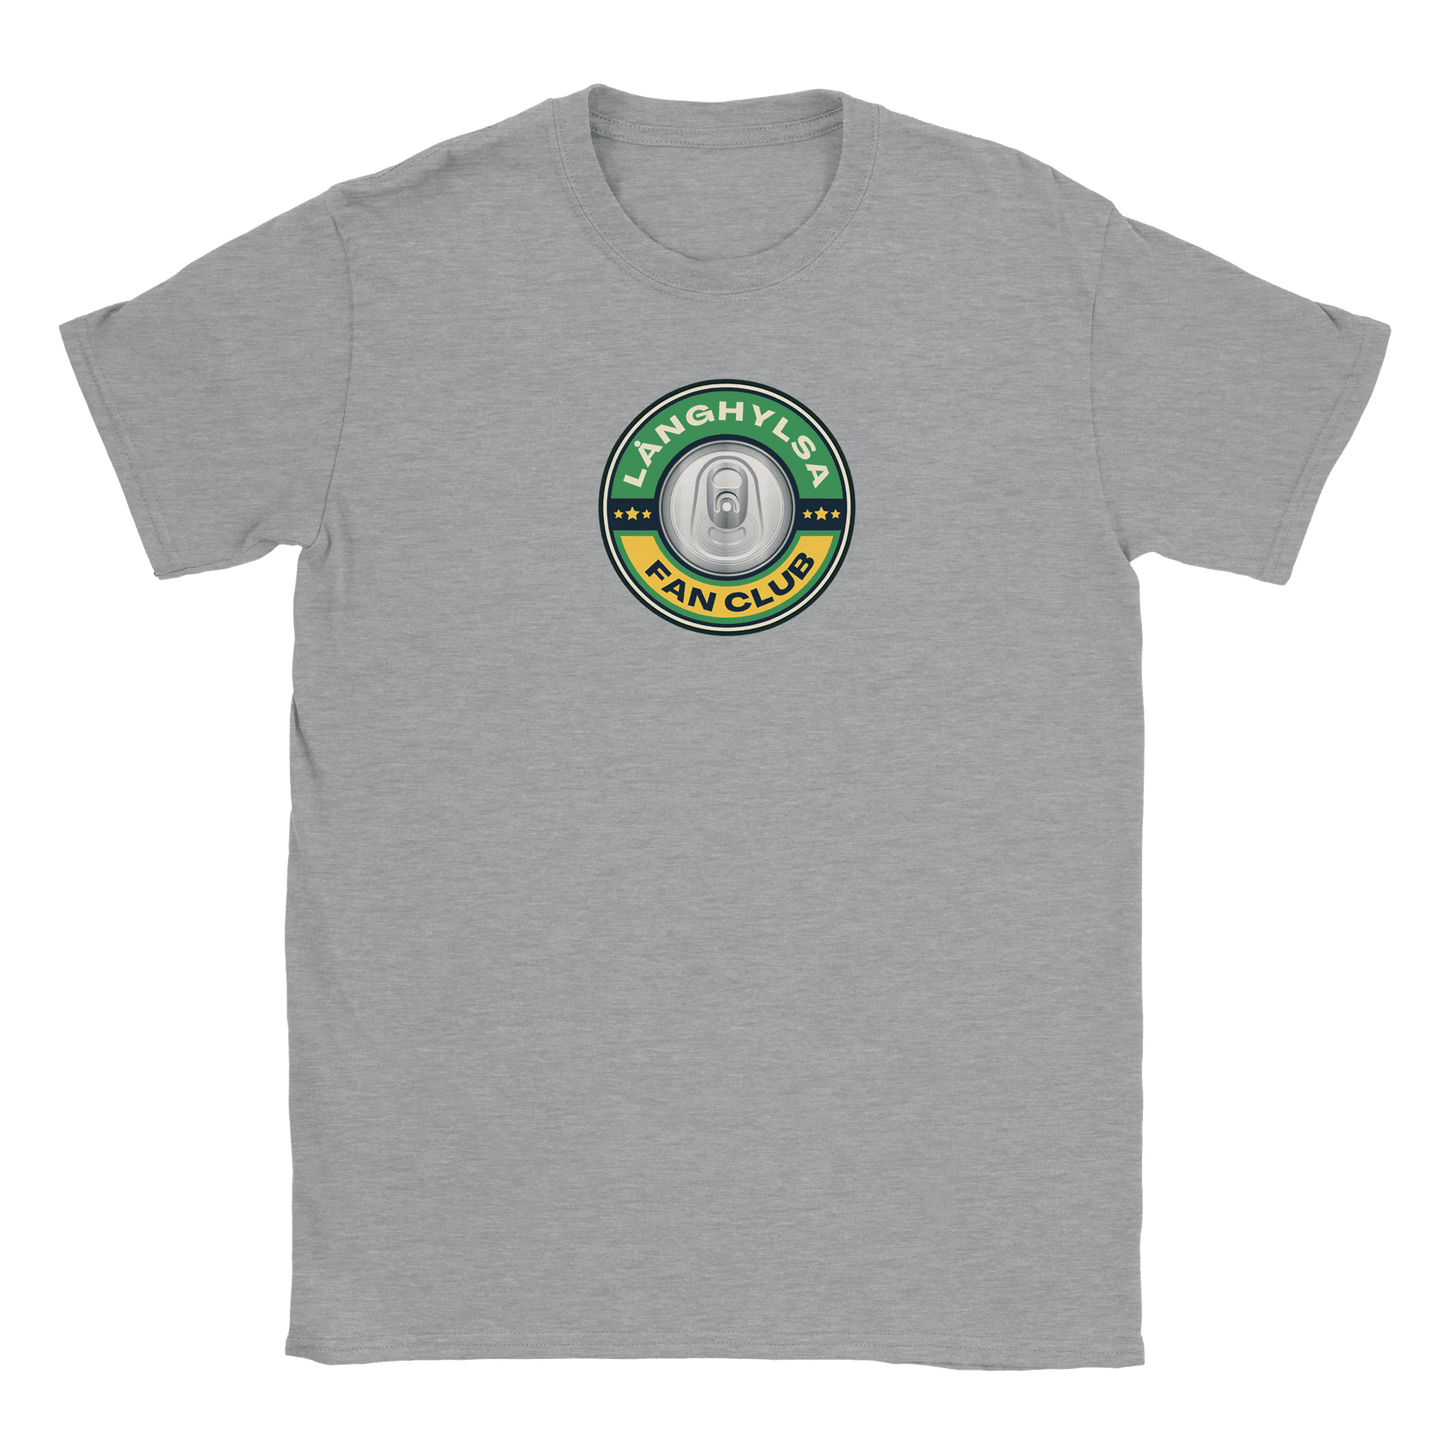 Långhylsa Fan Club - T-shirt Sports Grey